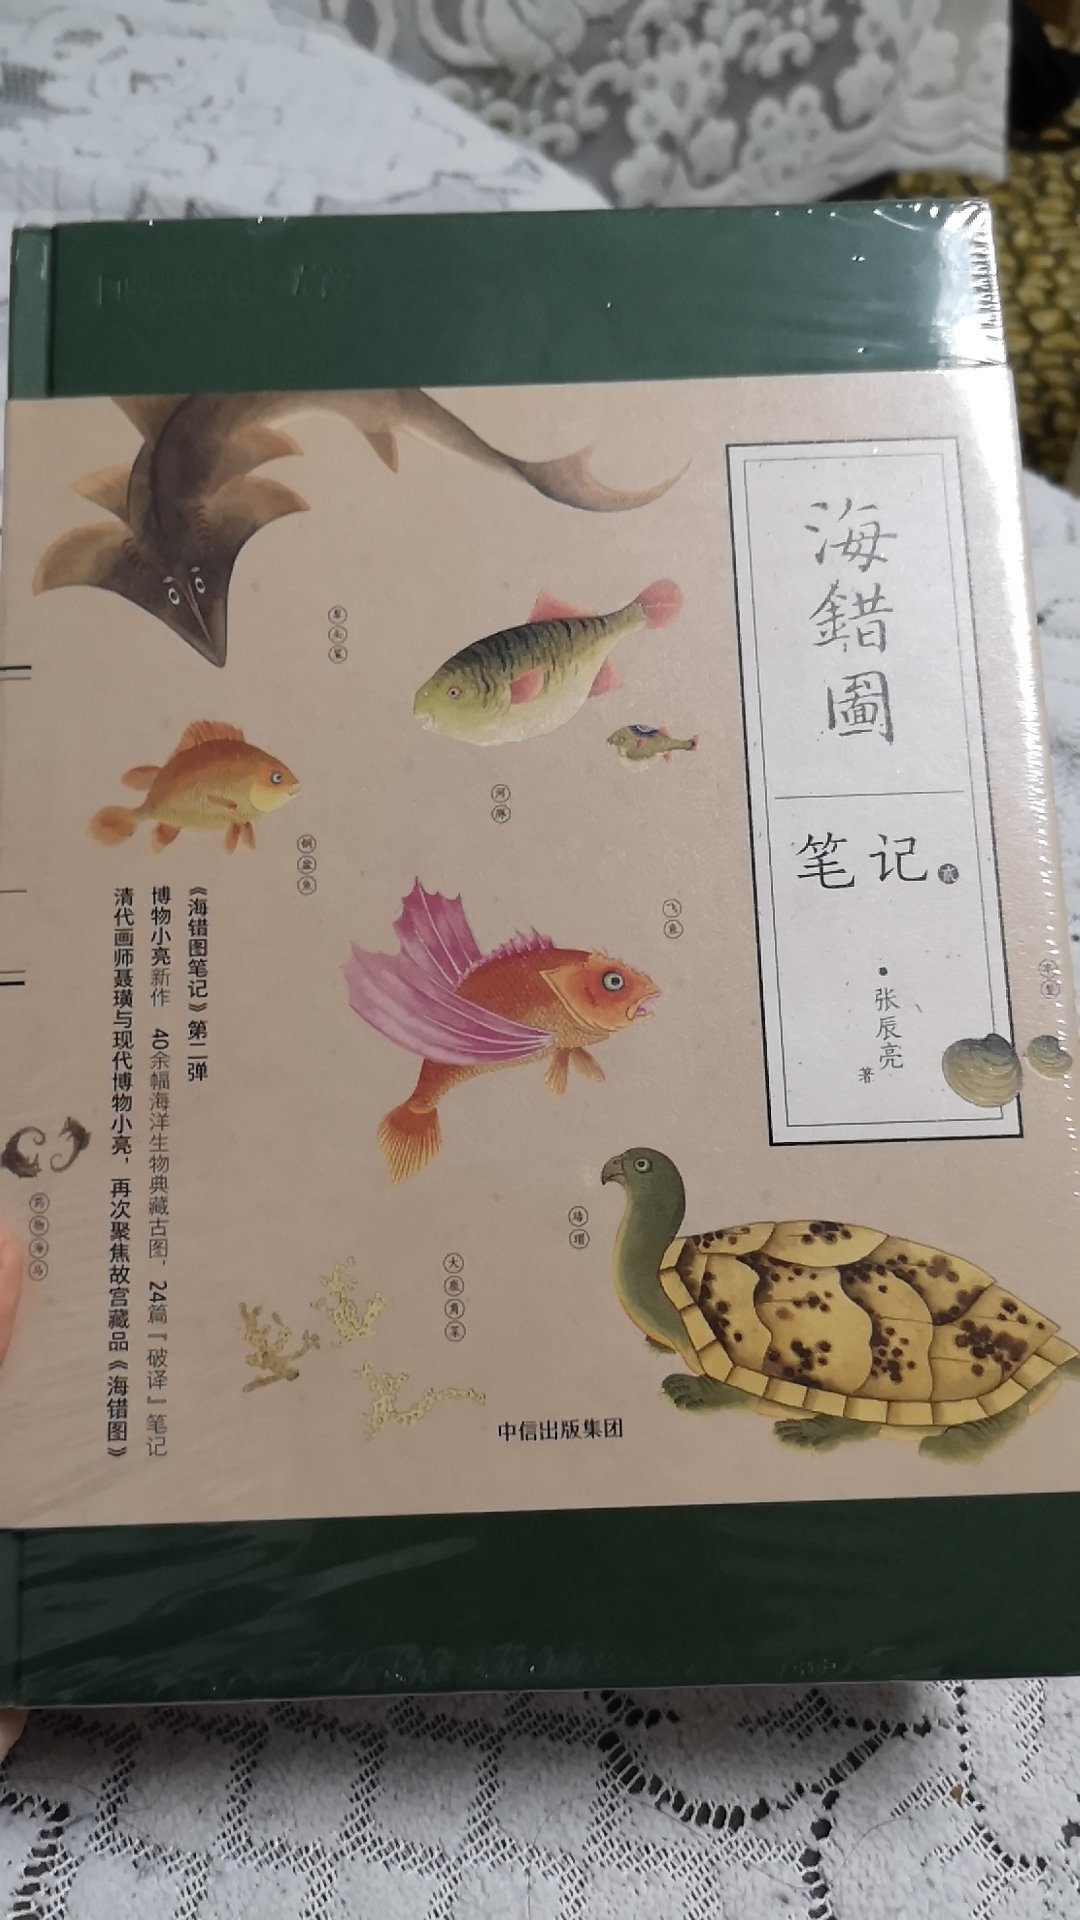 中国国家地理 海错图笔记很好看，印刷精美，图文并茂。